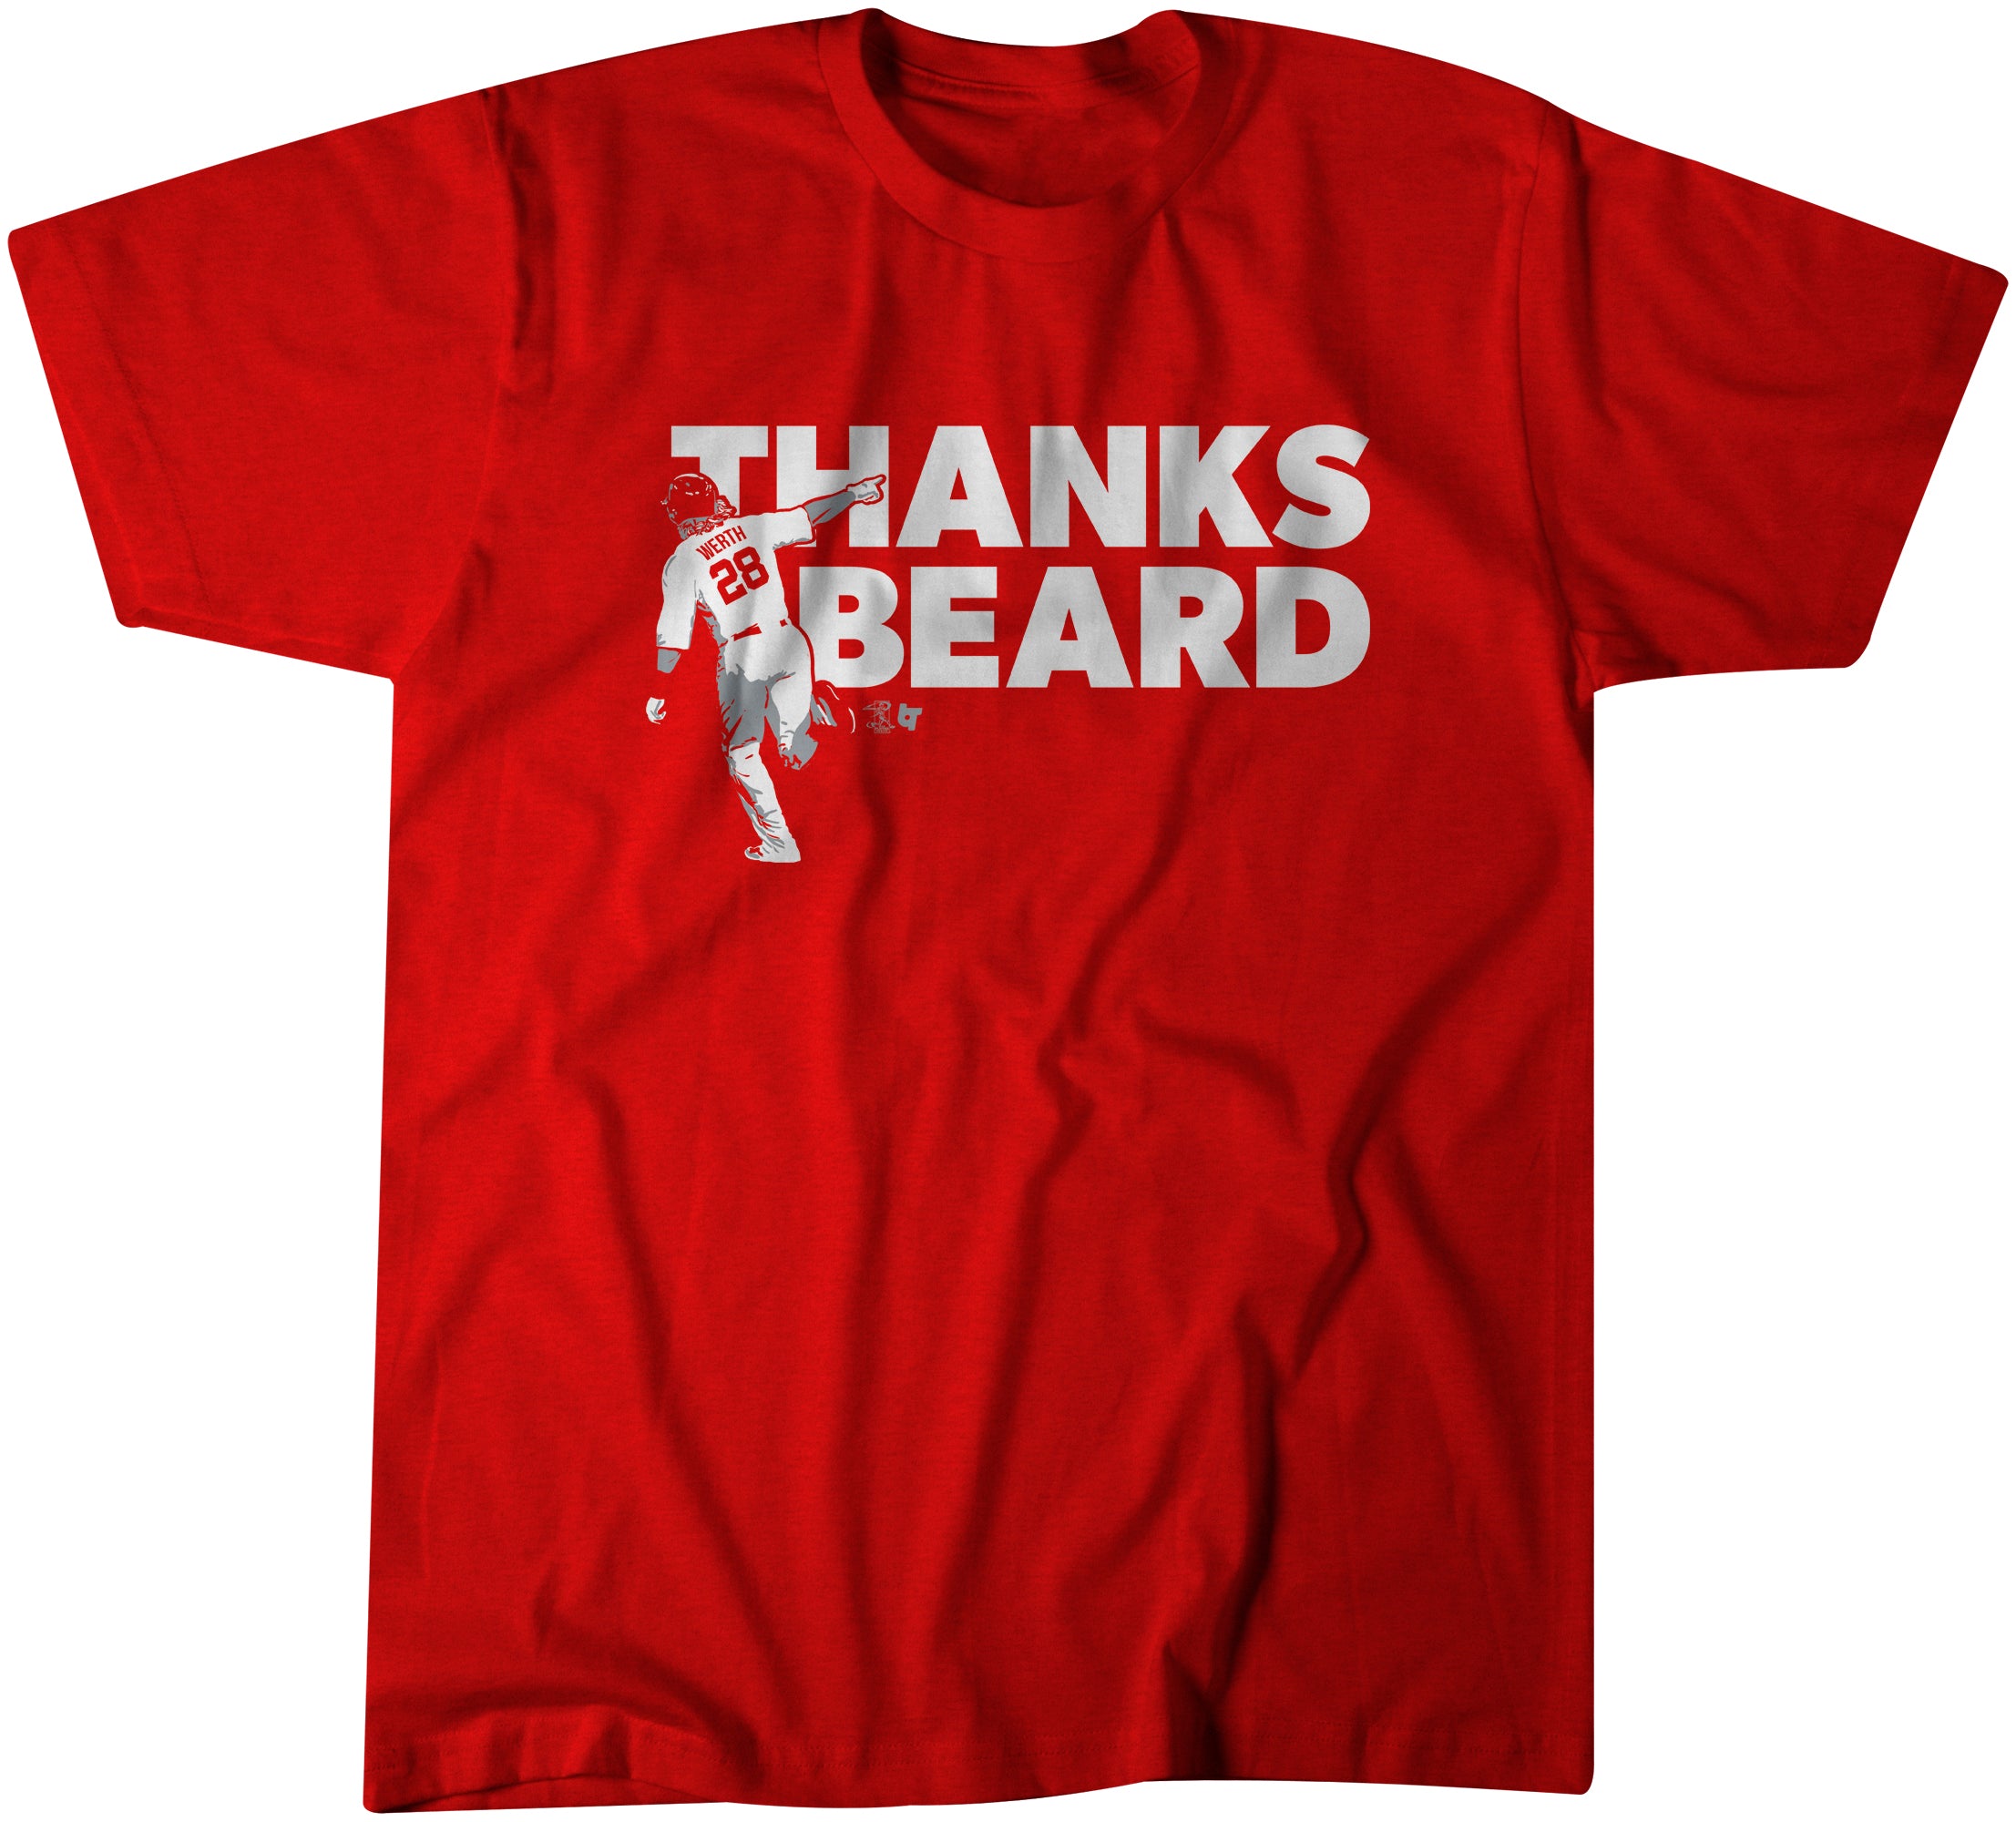 Thank You, Beard, Small - T-Shirt - Red - Sports Fan Gear | breakingt